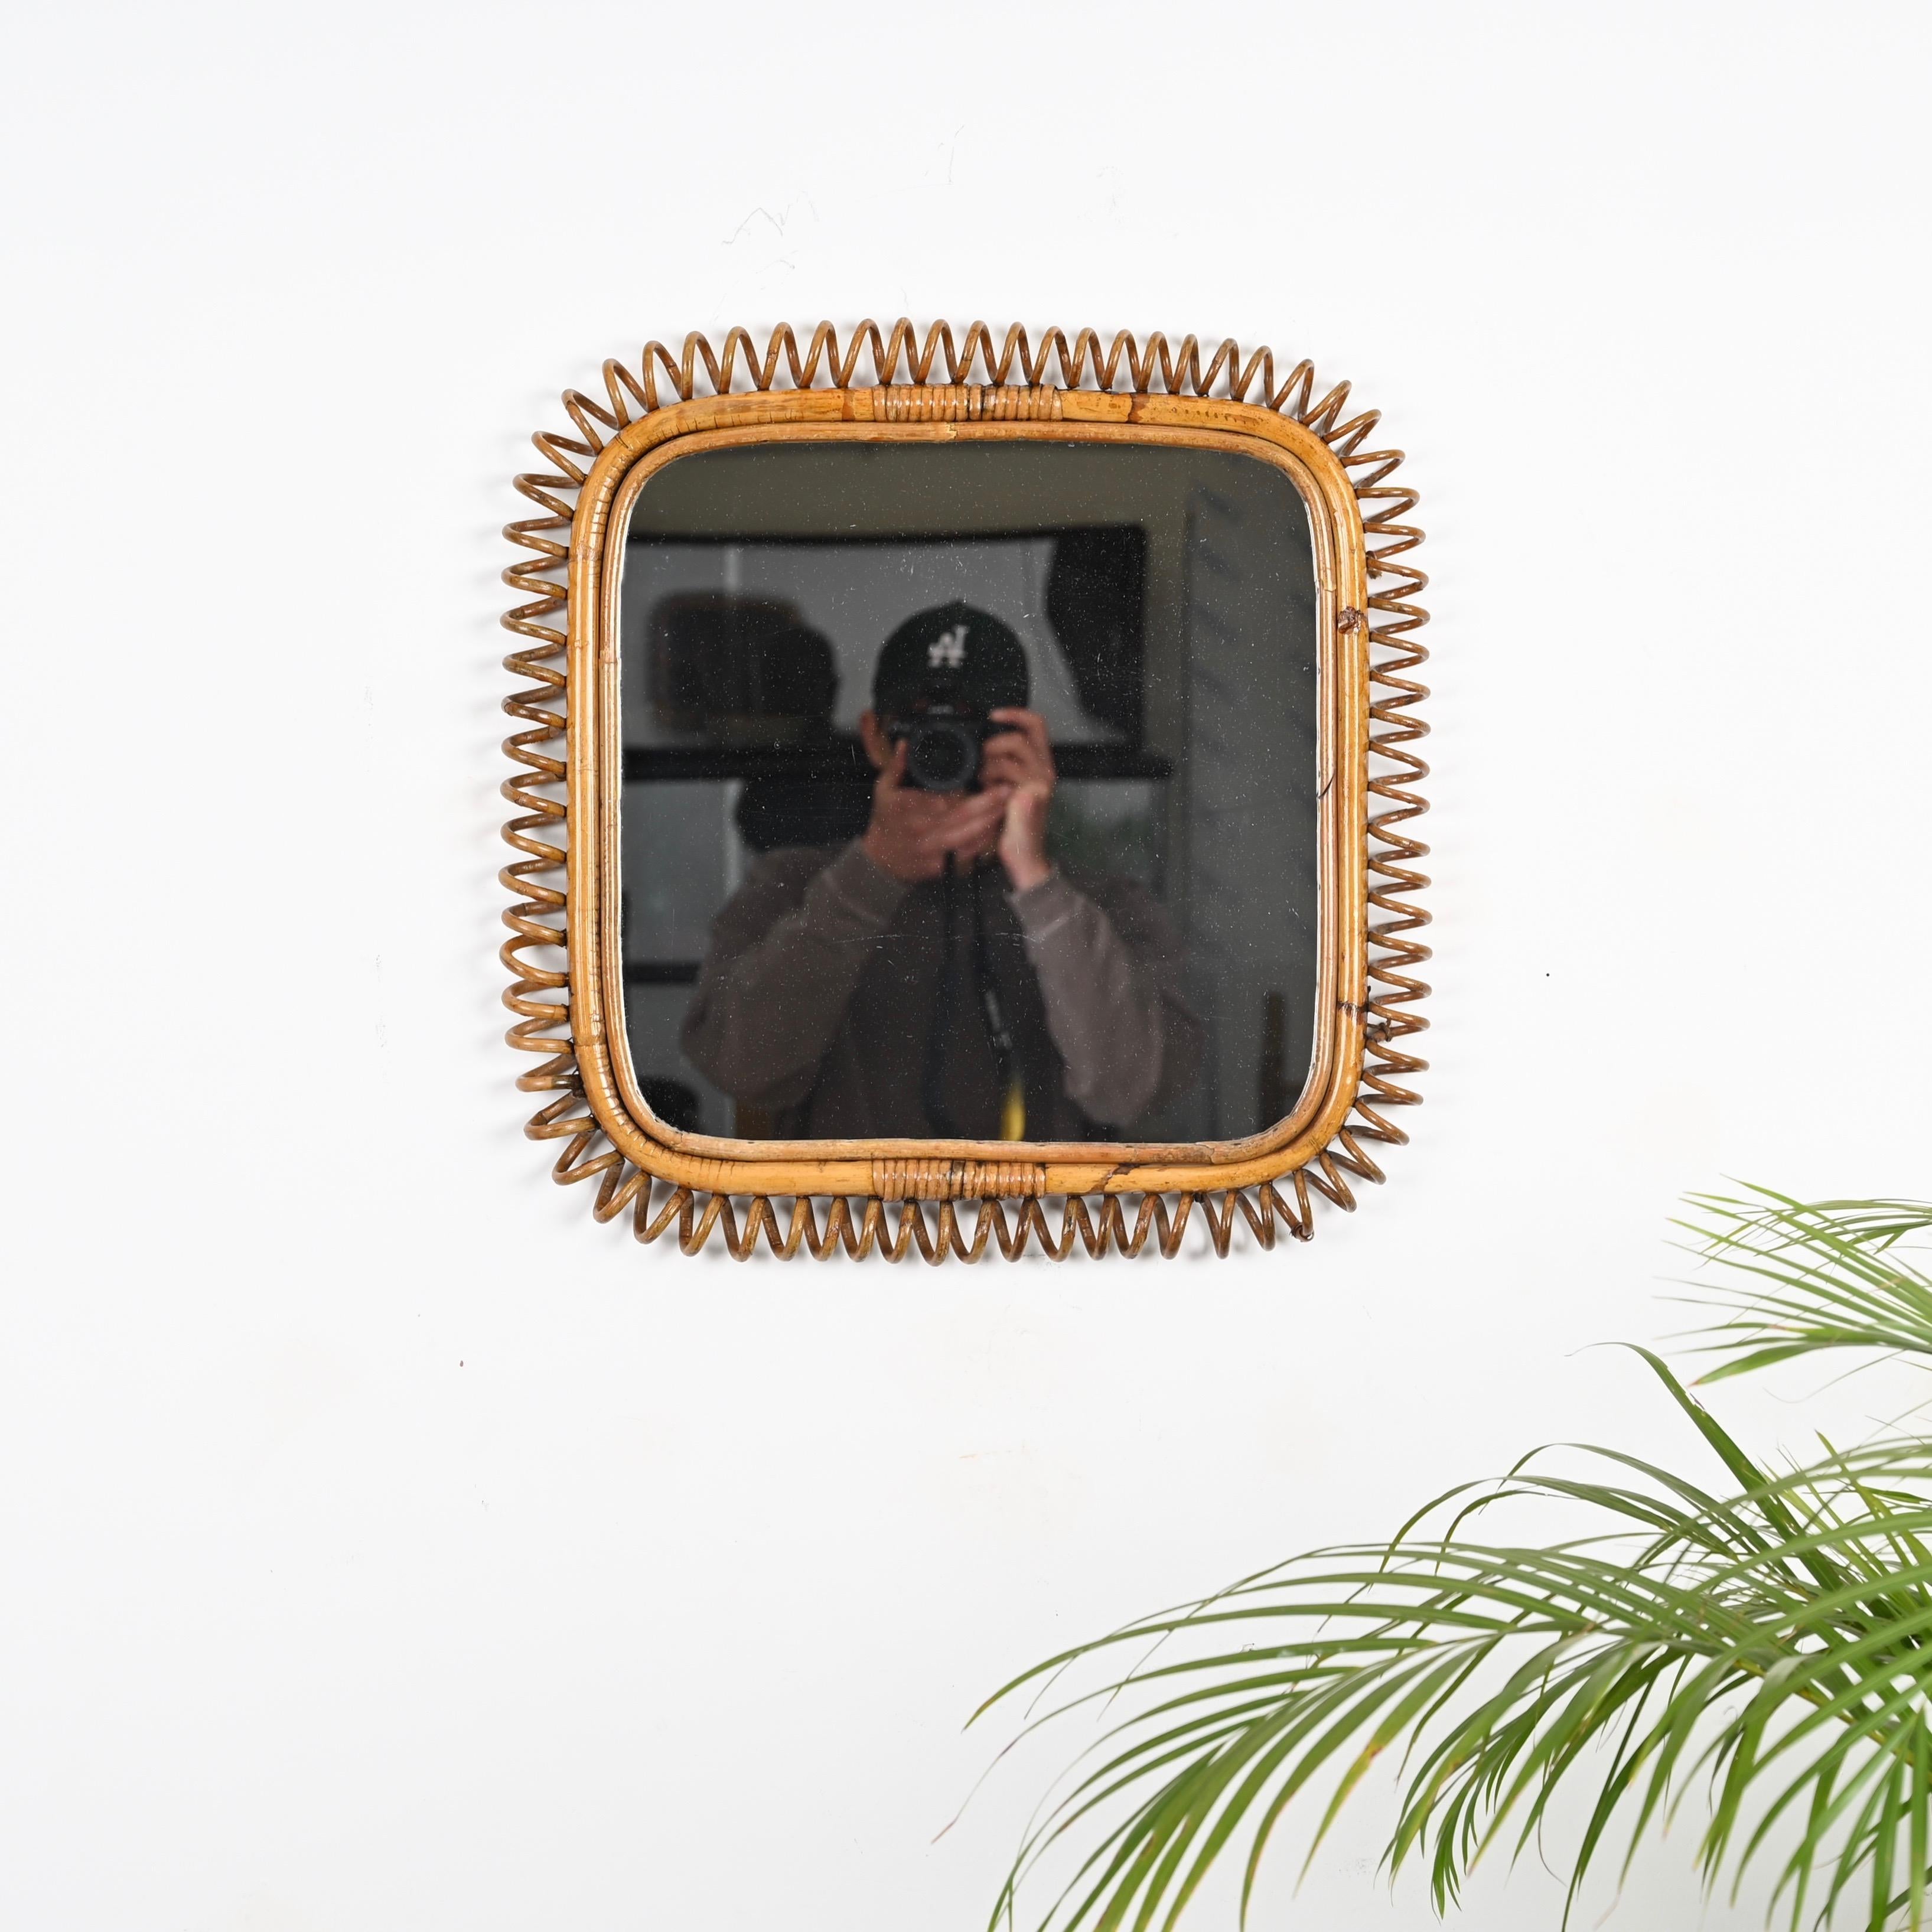 Spectaculaire miroir carré Côte d'Azur du milieu du siècle, entièrement réalisé en bambou et rotin courbé.  et l'osier. Ce miroir unique a été fabriqué en Italie dans les années 1960.

Cet étonnant miroir est entièrement fabriqué à la main avec un